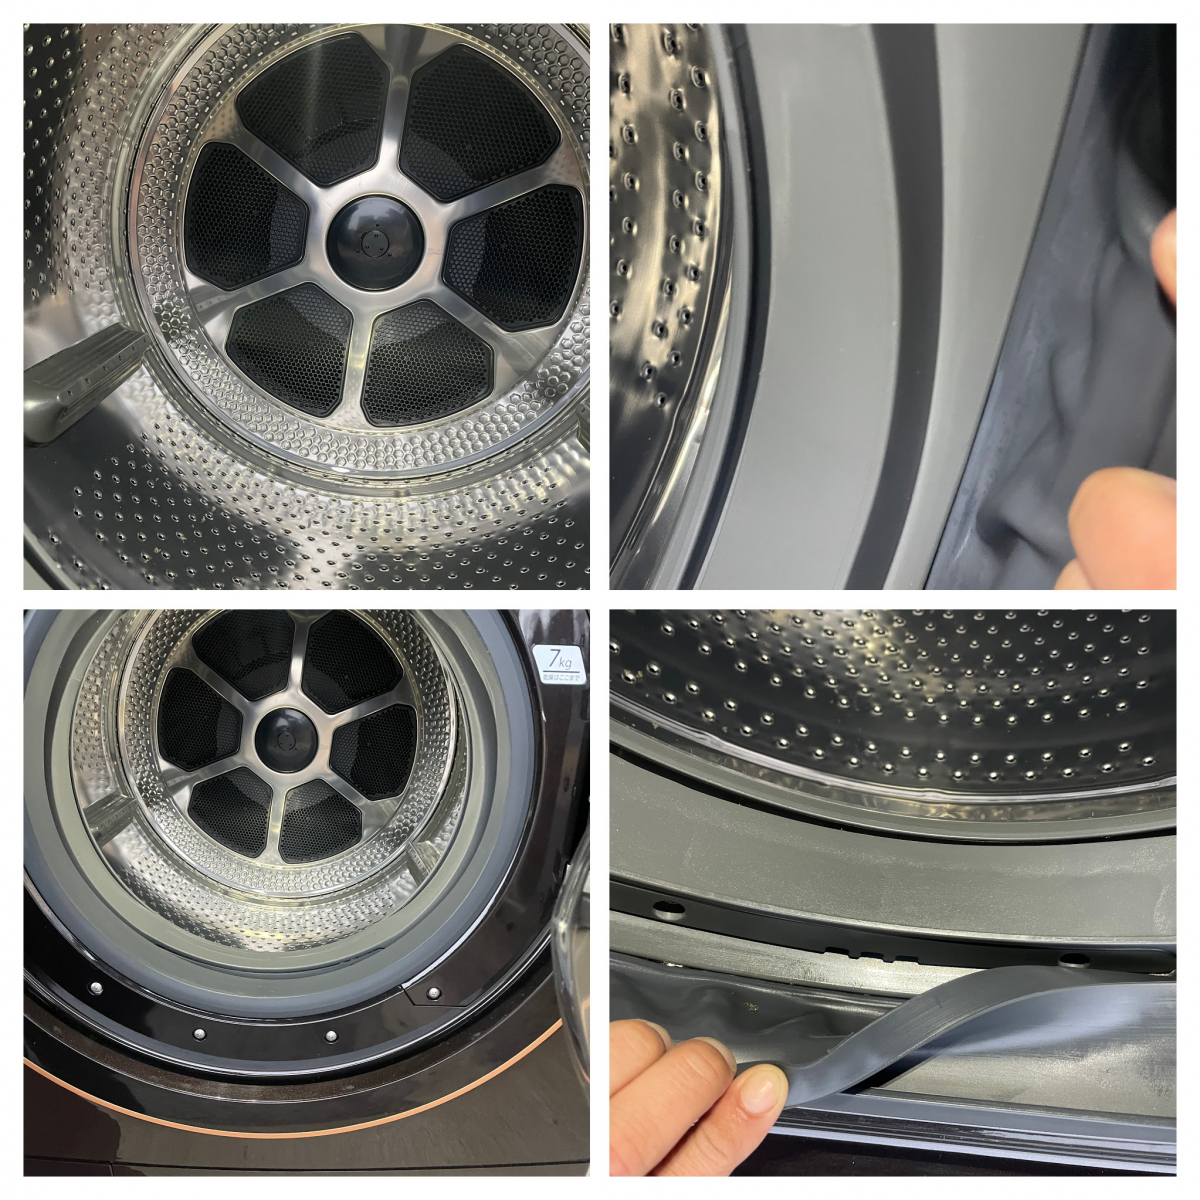 2021年製 美品 TOSHIBA TW-127X9R ドラム式洗濯機 ZABOON 洗濯容量 12 